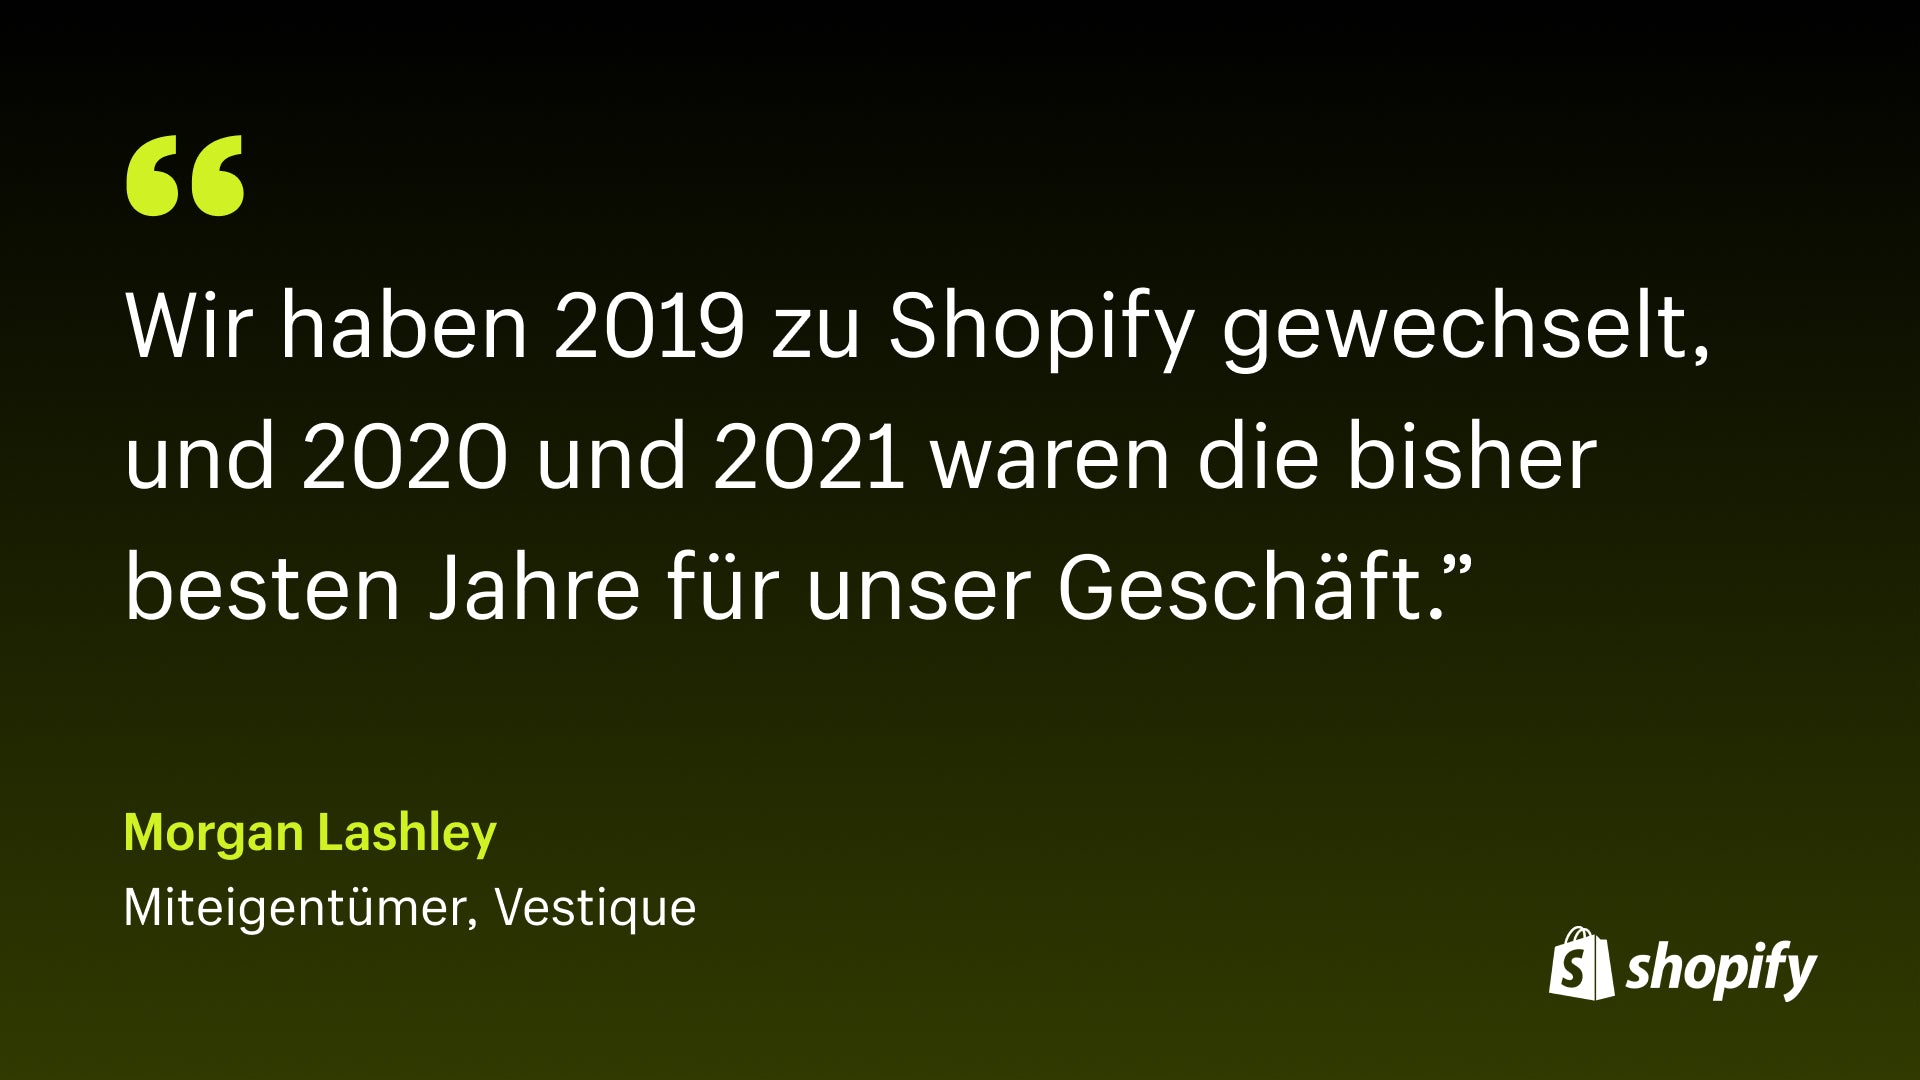 Bild eines Zitats von Morgan Lashley, Miteigentümer von Vestique, in dem es heißt: „Wir sind 2019 zu Shopify gewechselt, und 2020 und 2021 waren bisher die besten Jahre für unser Unternehmen.“